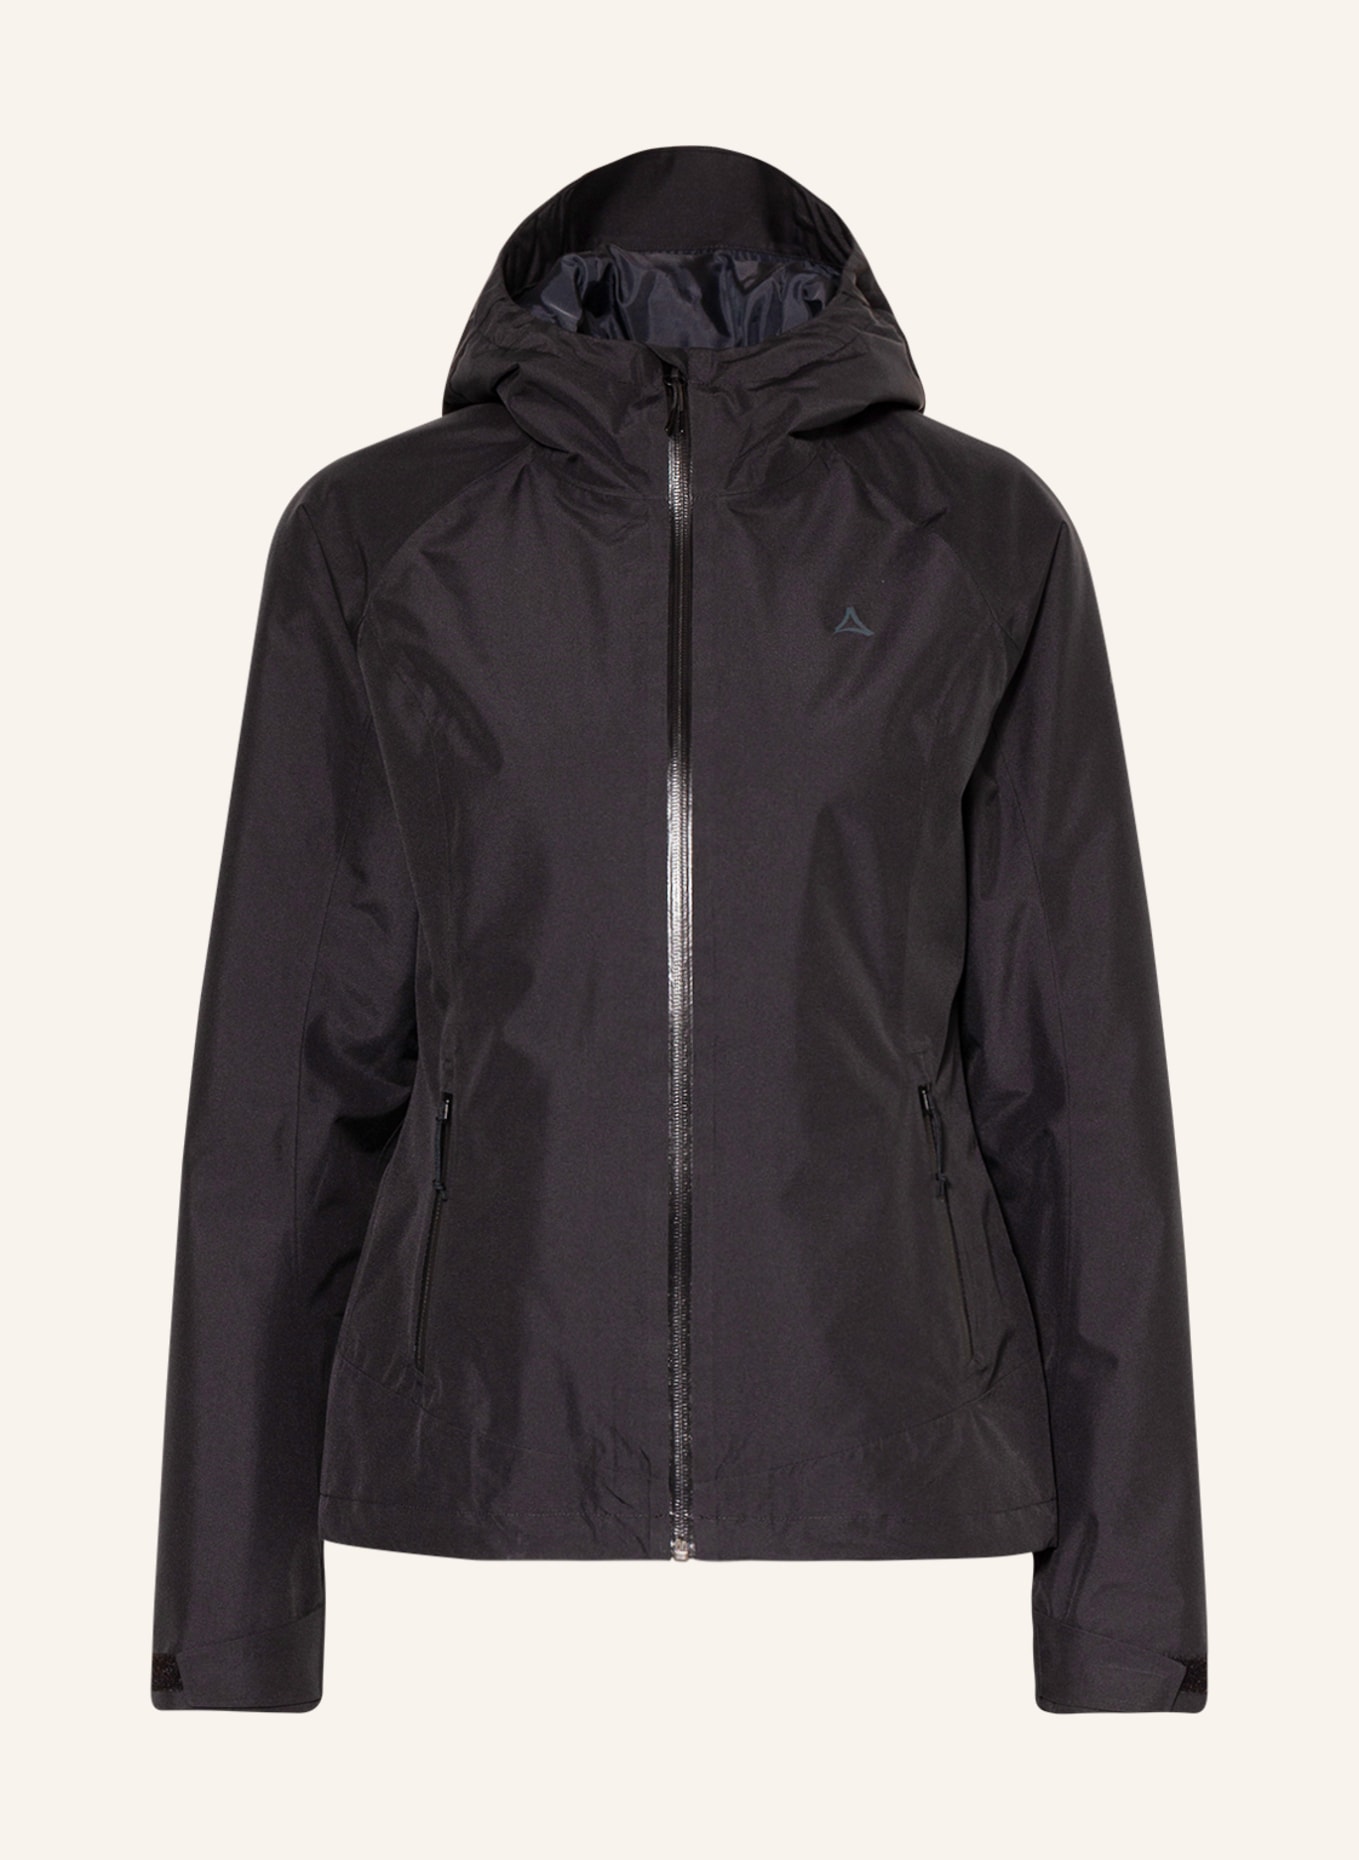 Schöffel Outdoor in black jacket WAMBERG